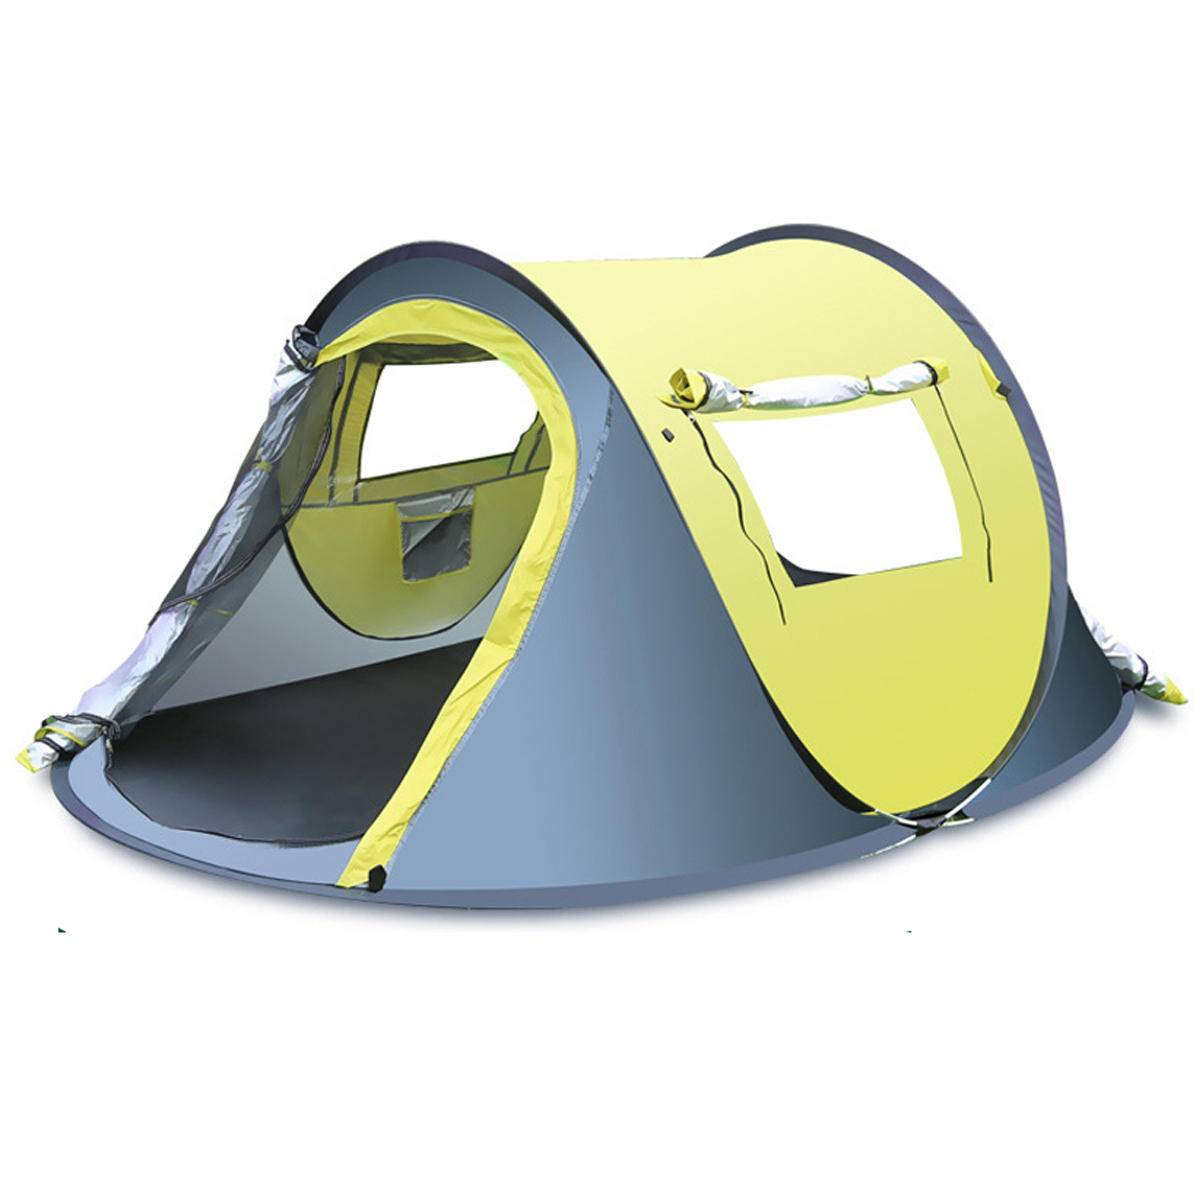 Развертываемый палатка на 3-4 человека для отдыха на природе с быстрым автоматическим открытием, водонепроницаемая и защищенная от дождя, для кемпинга и походов.